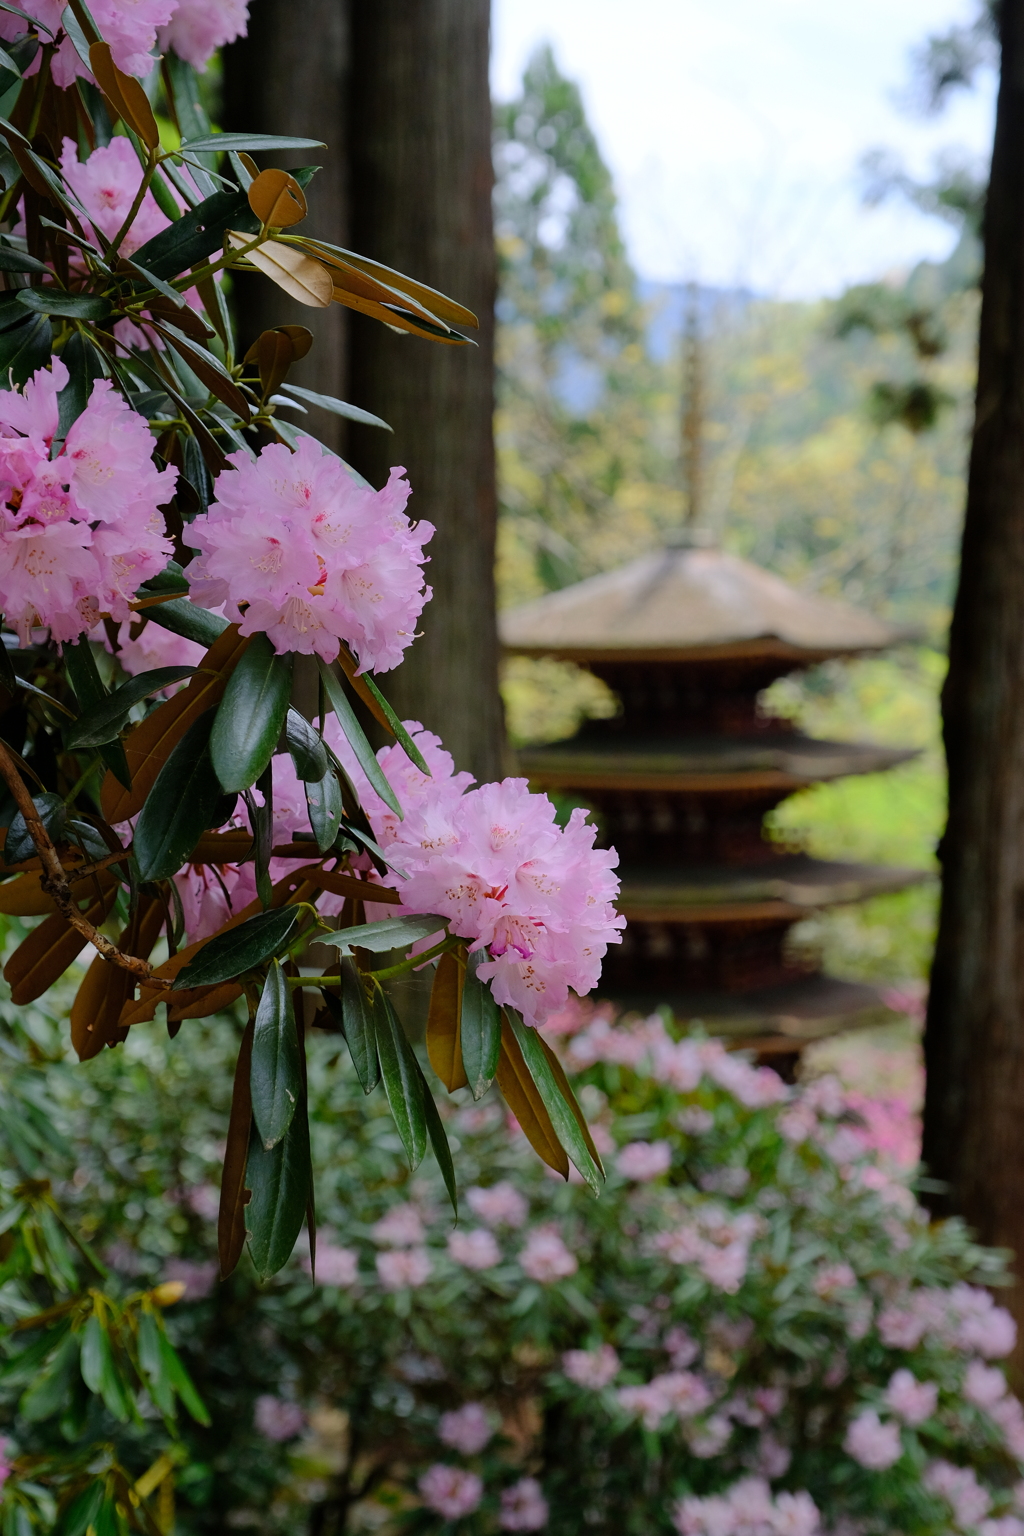 室生寺の石楠花